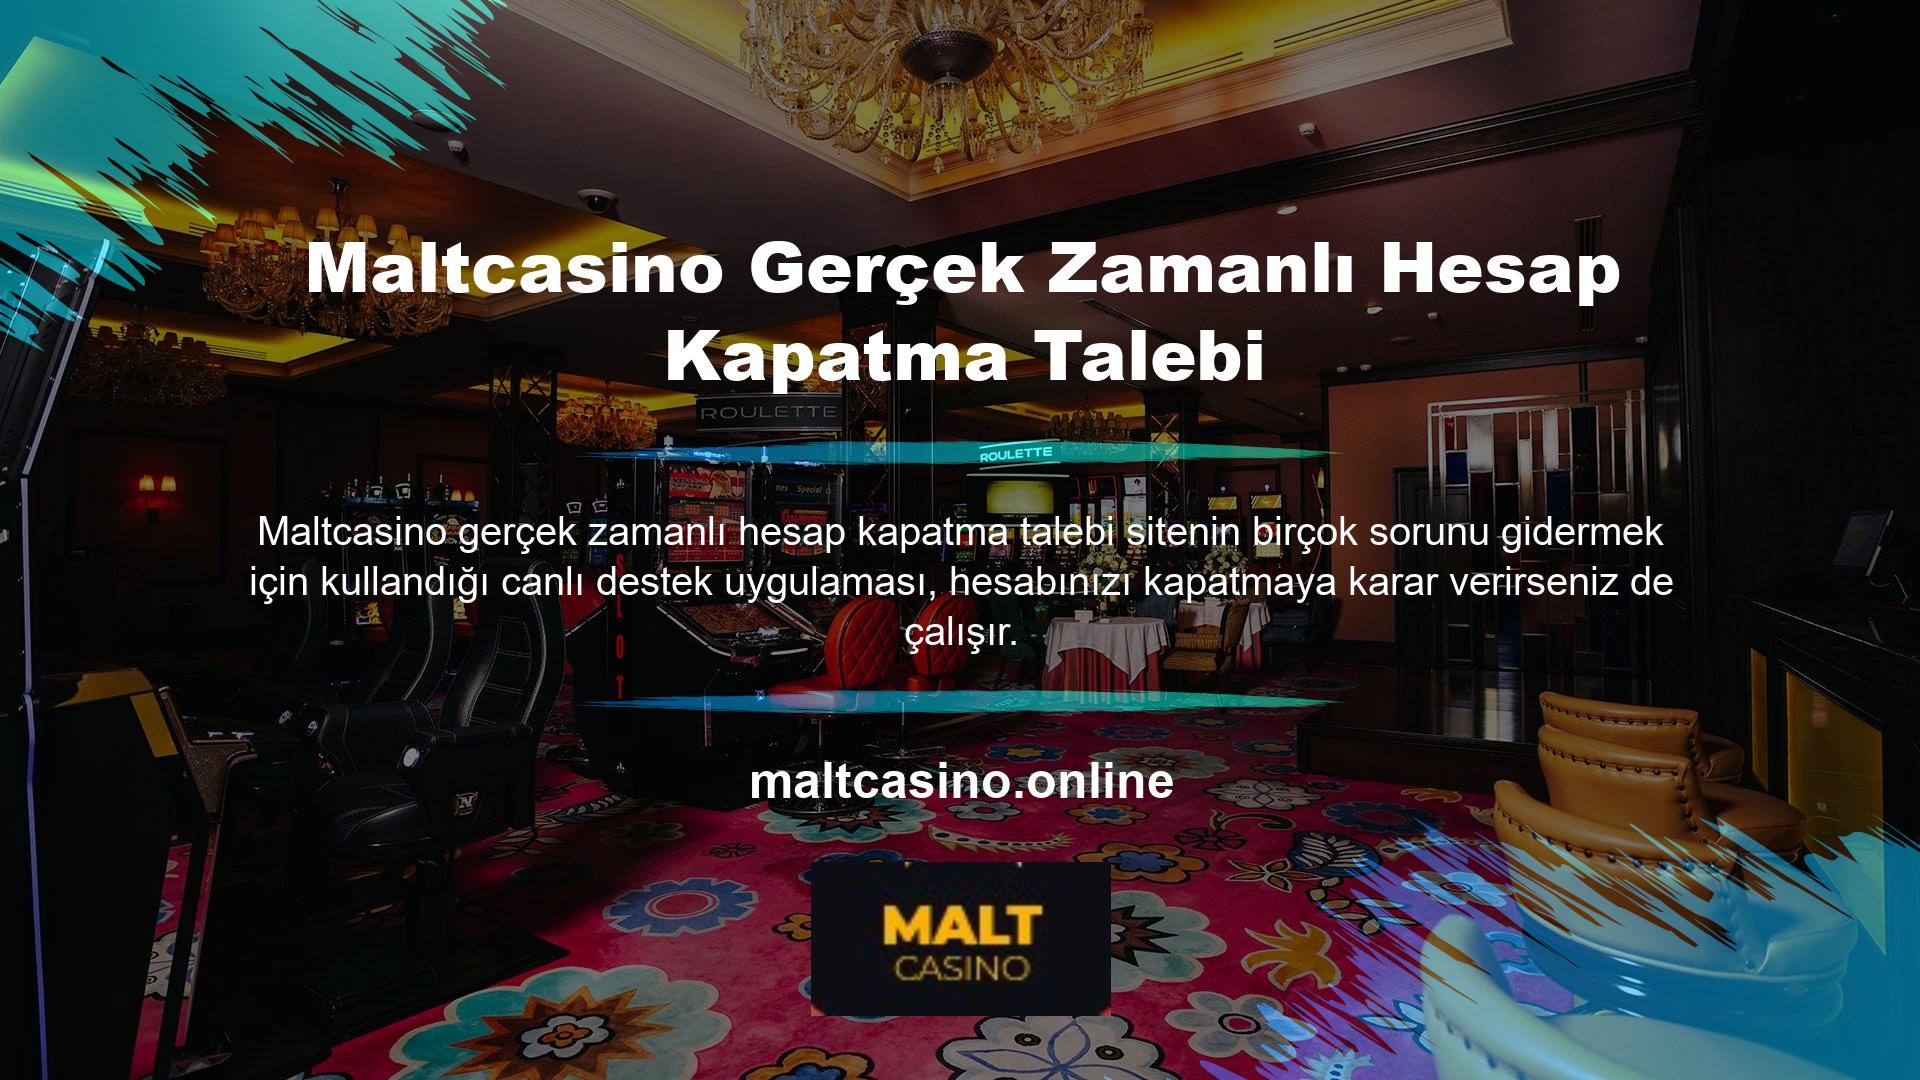 Maltcasino hesabınızın kapatılması, canlı destek ve üyelik için bağlantı gerektirir